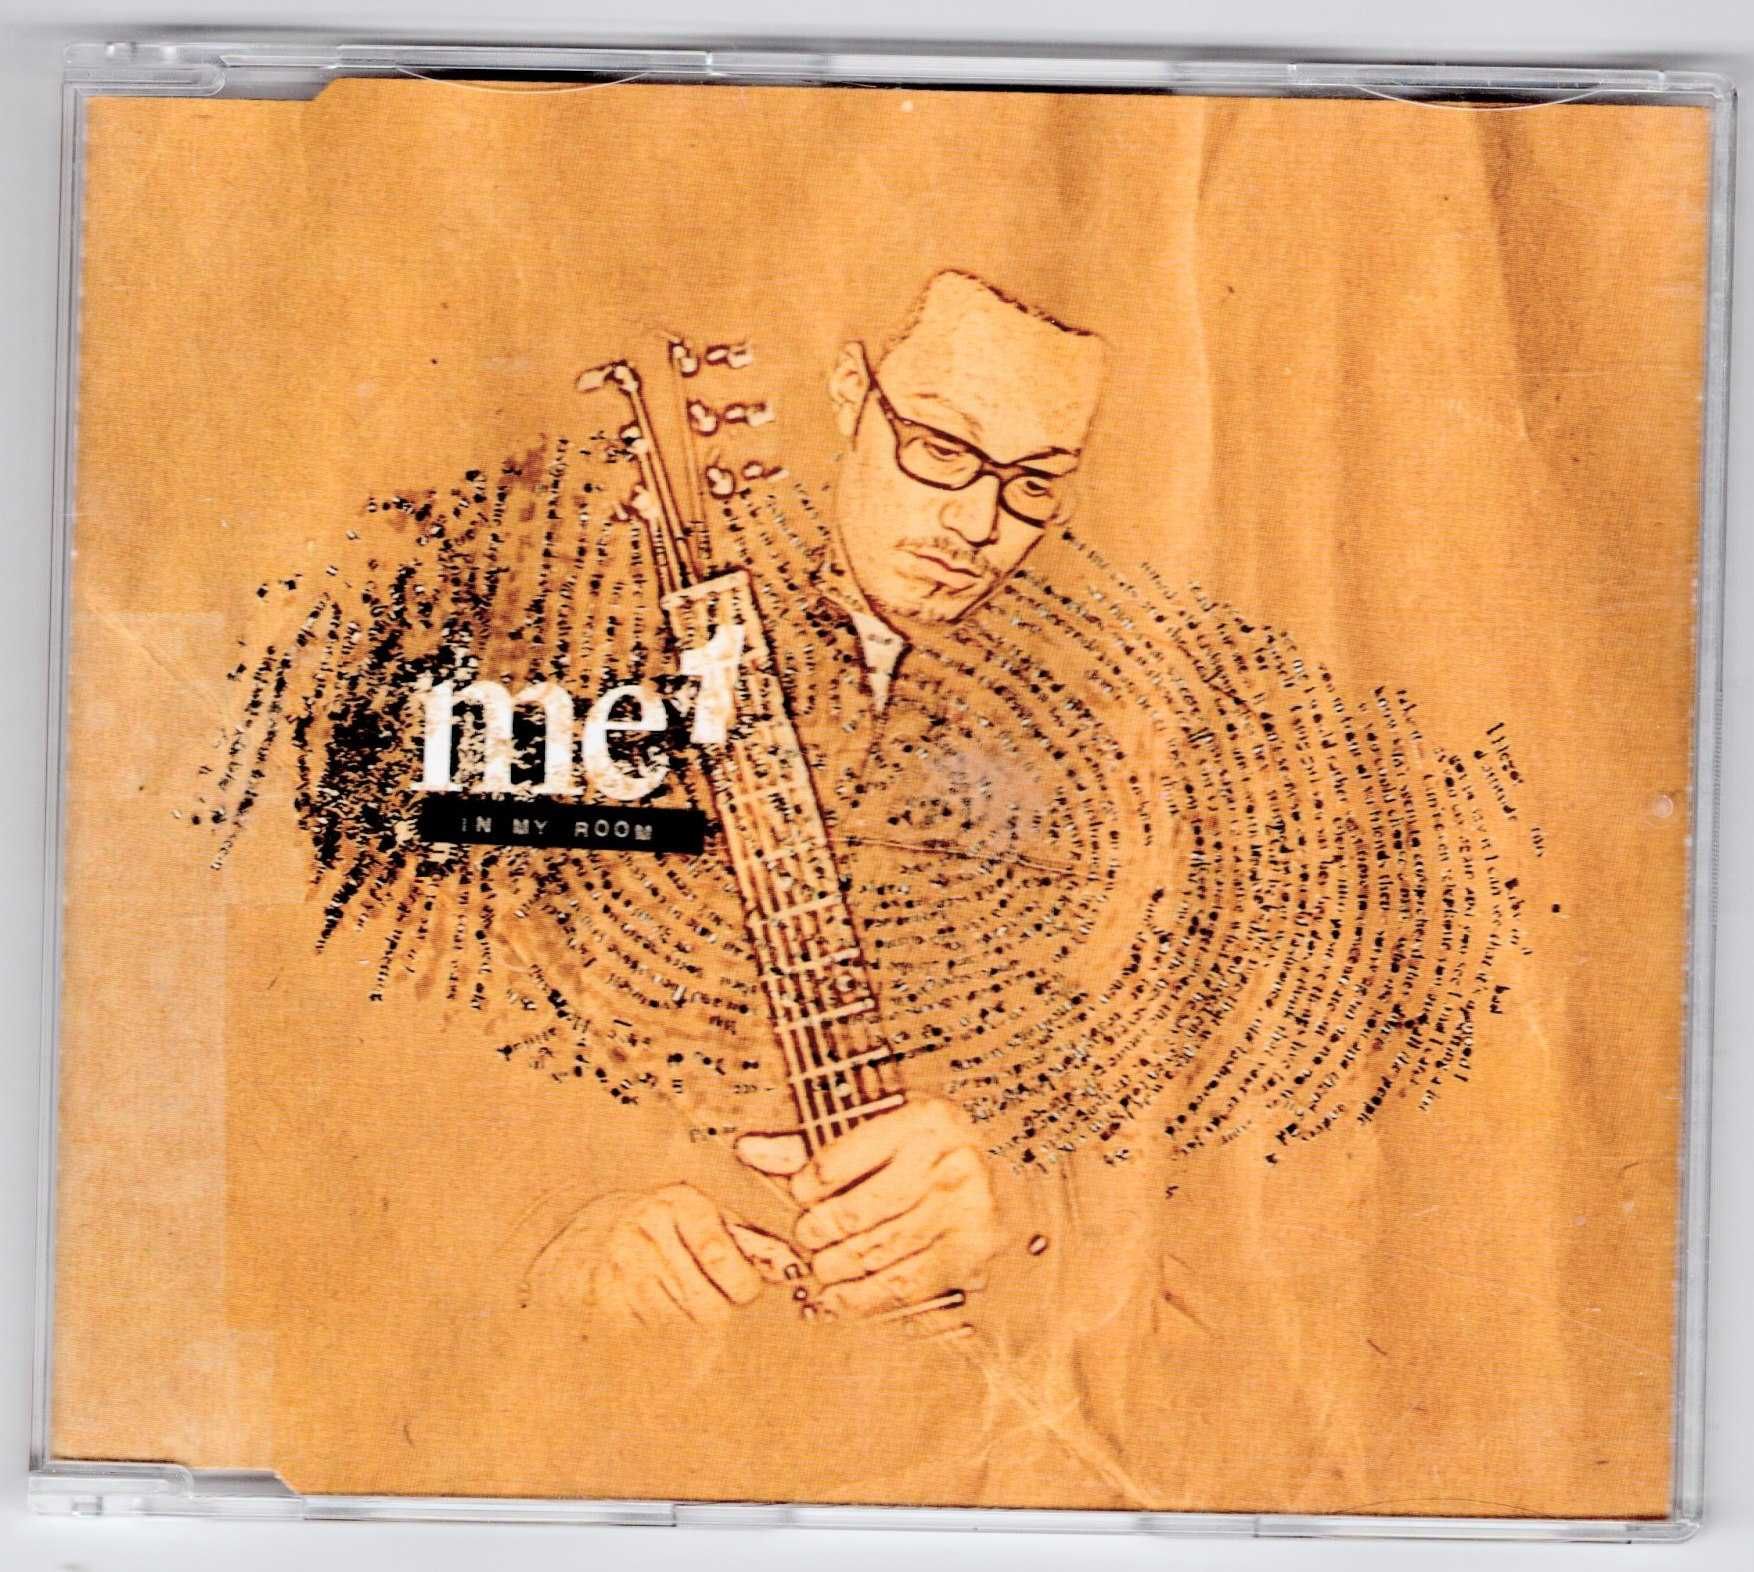 Me 1 - In My Room (CD, Singiel)